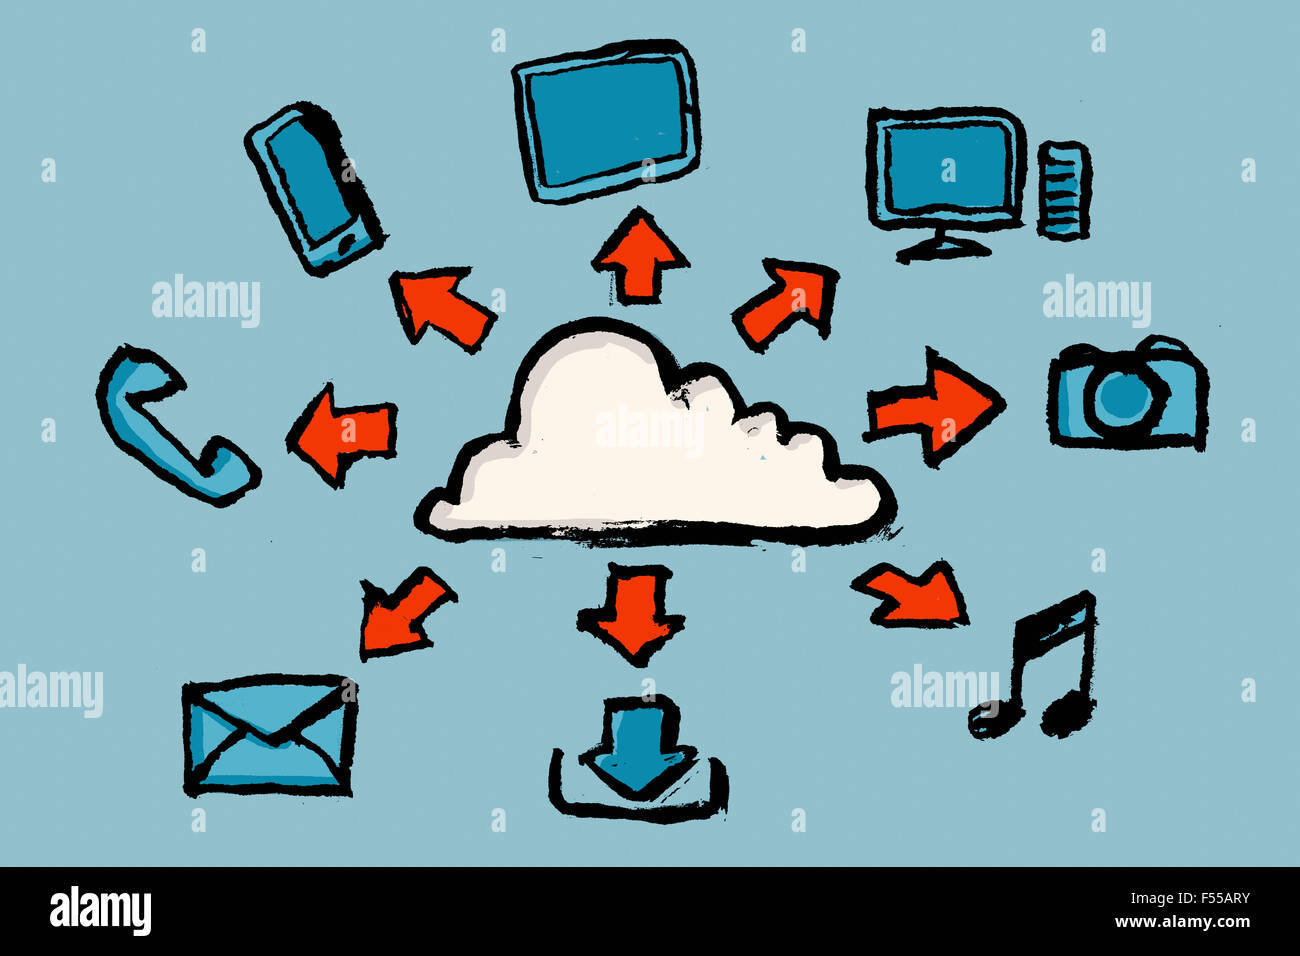 Immagine illustrativa del cloud computing contro sfondo blu Foto Stock